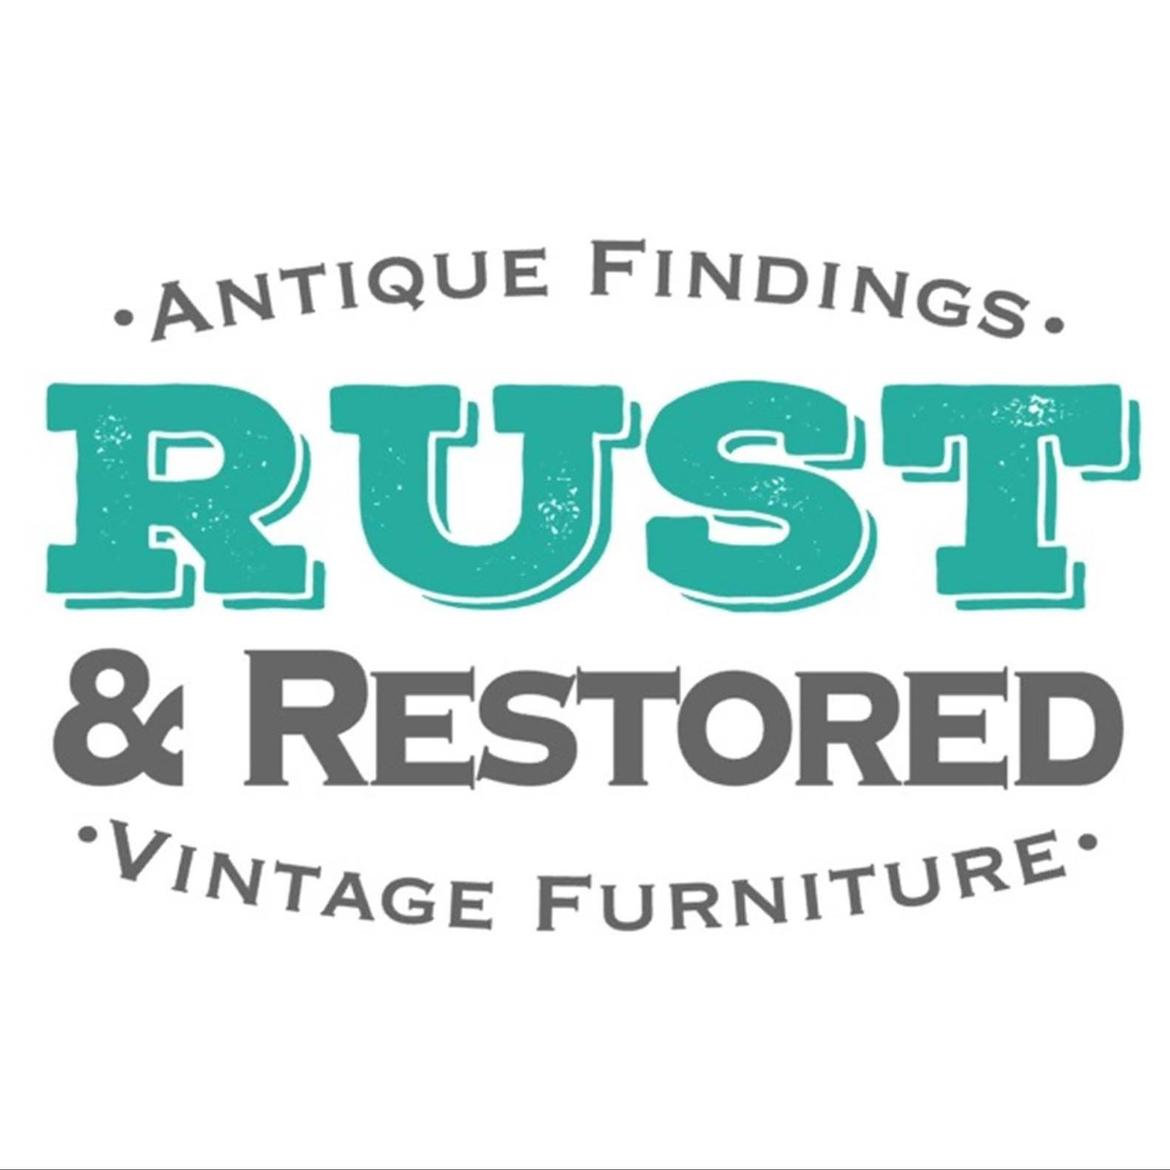 RustNRestored's images